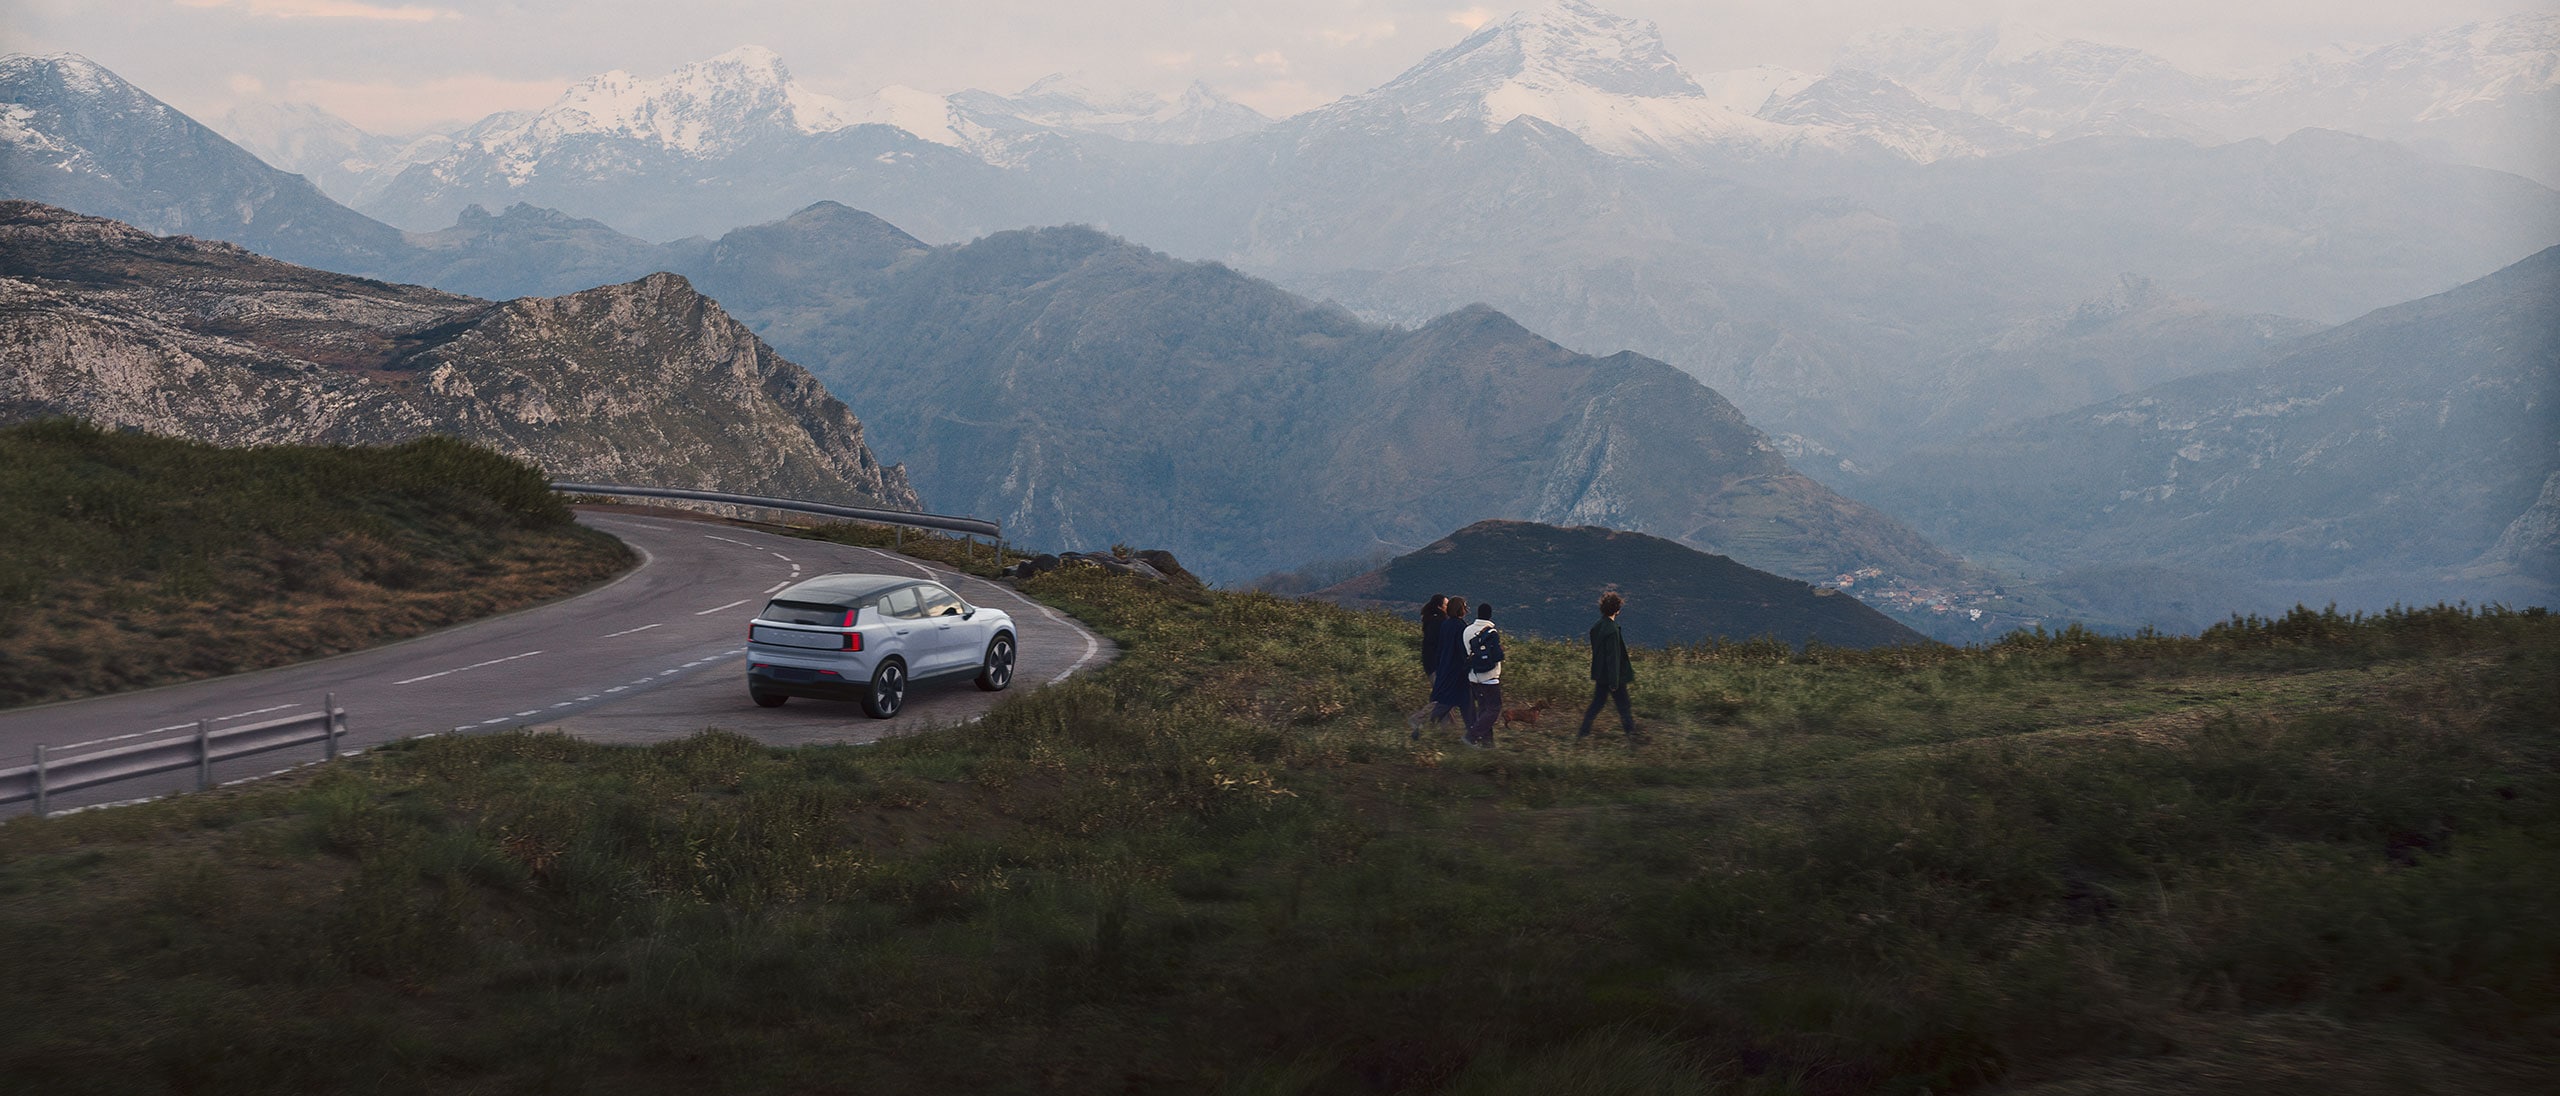 Ein vollelektrischer Volvo parkt am Rande einer wunderschönen Berglandschaft.